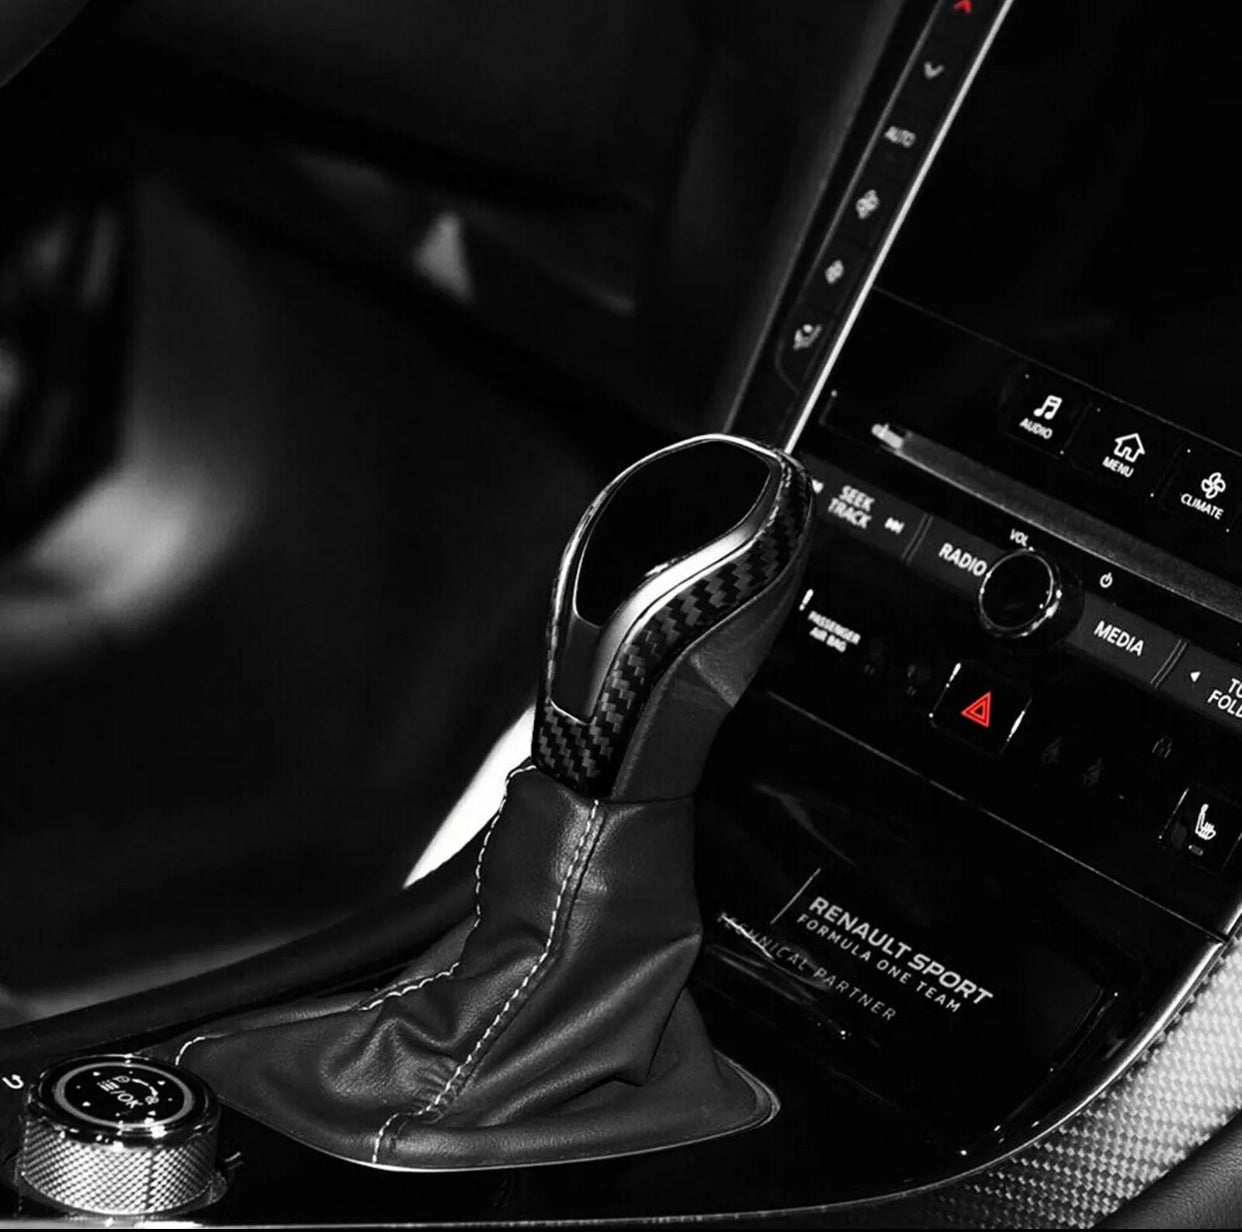 For Infiniti QX60 Q60 QX80 2016-2022 Carbon Fiber Car Gear Shift Knob Cover Trim